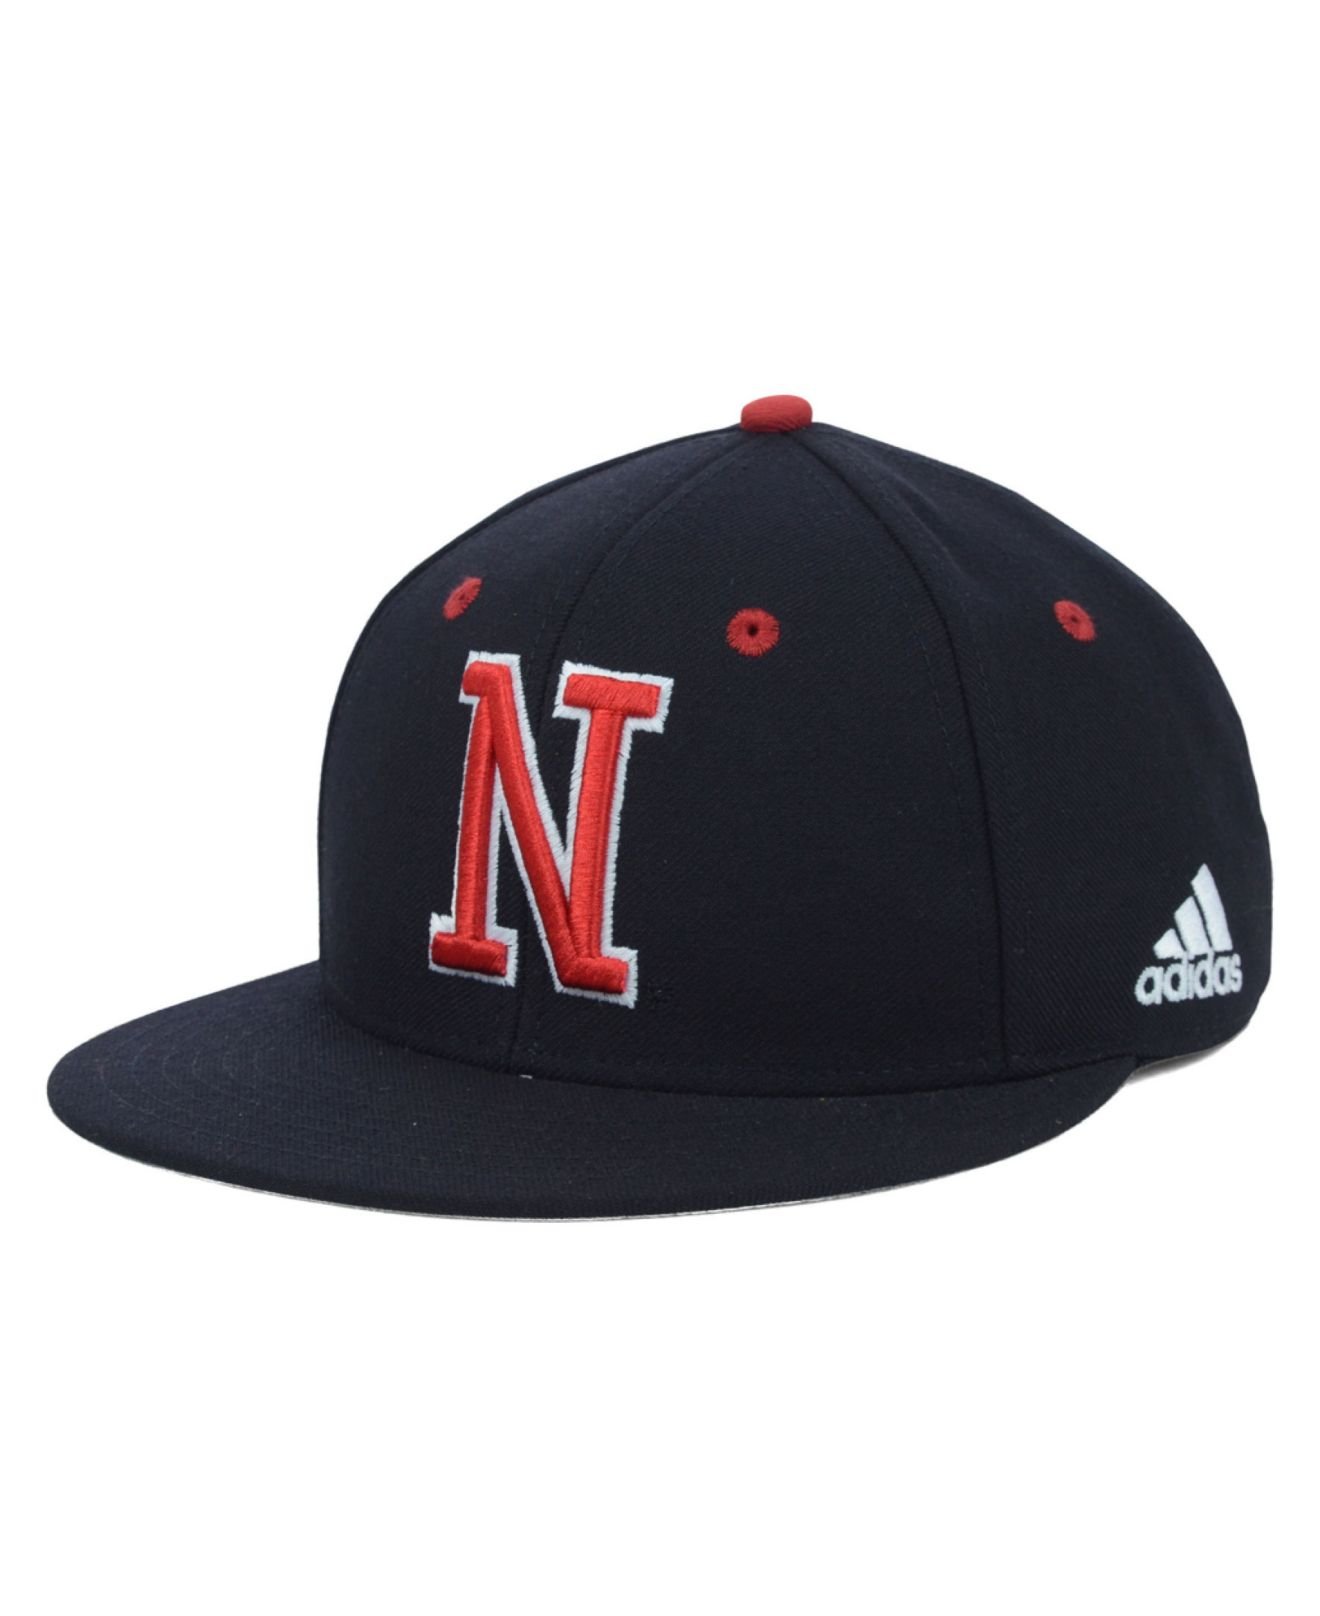 nebraska baseball hat low price 22c83 454c5